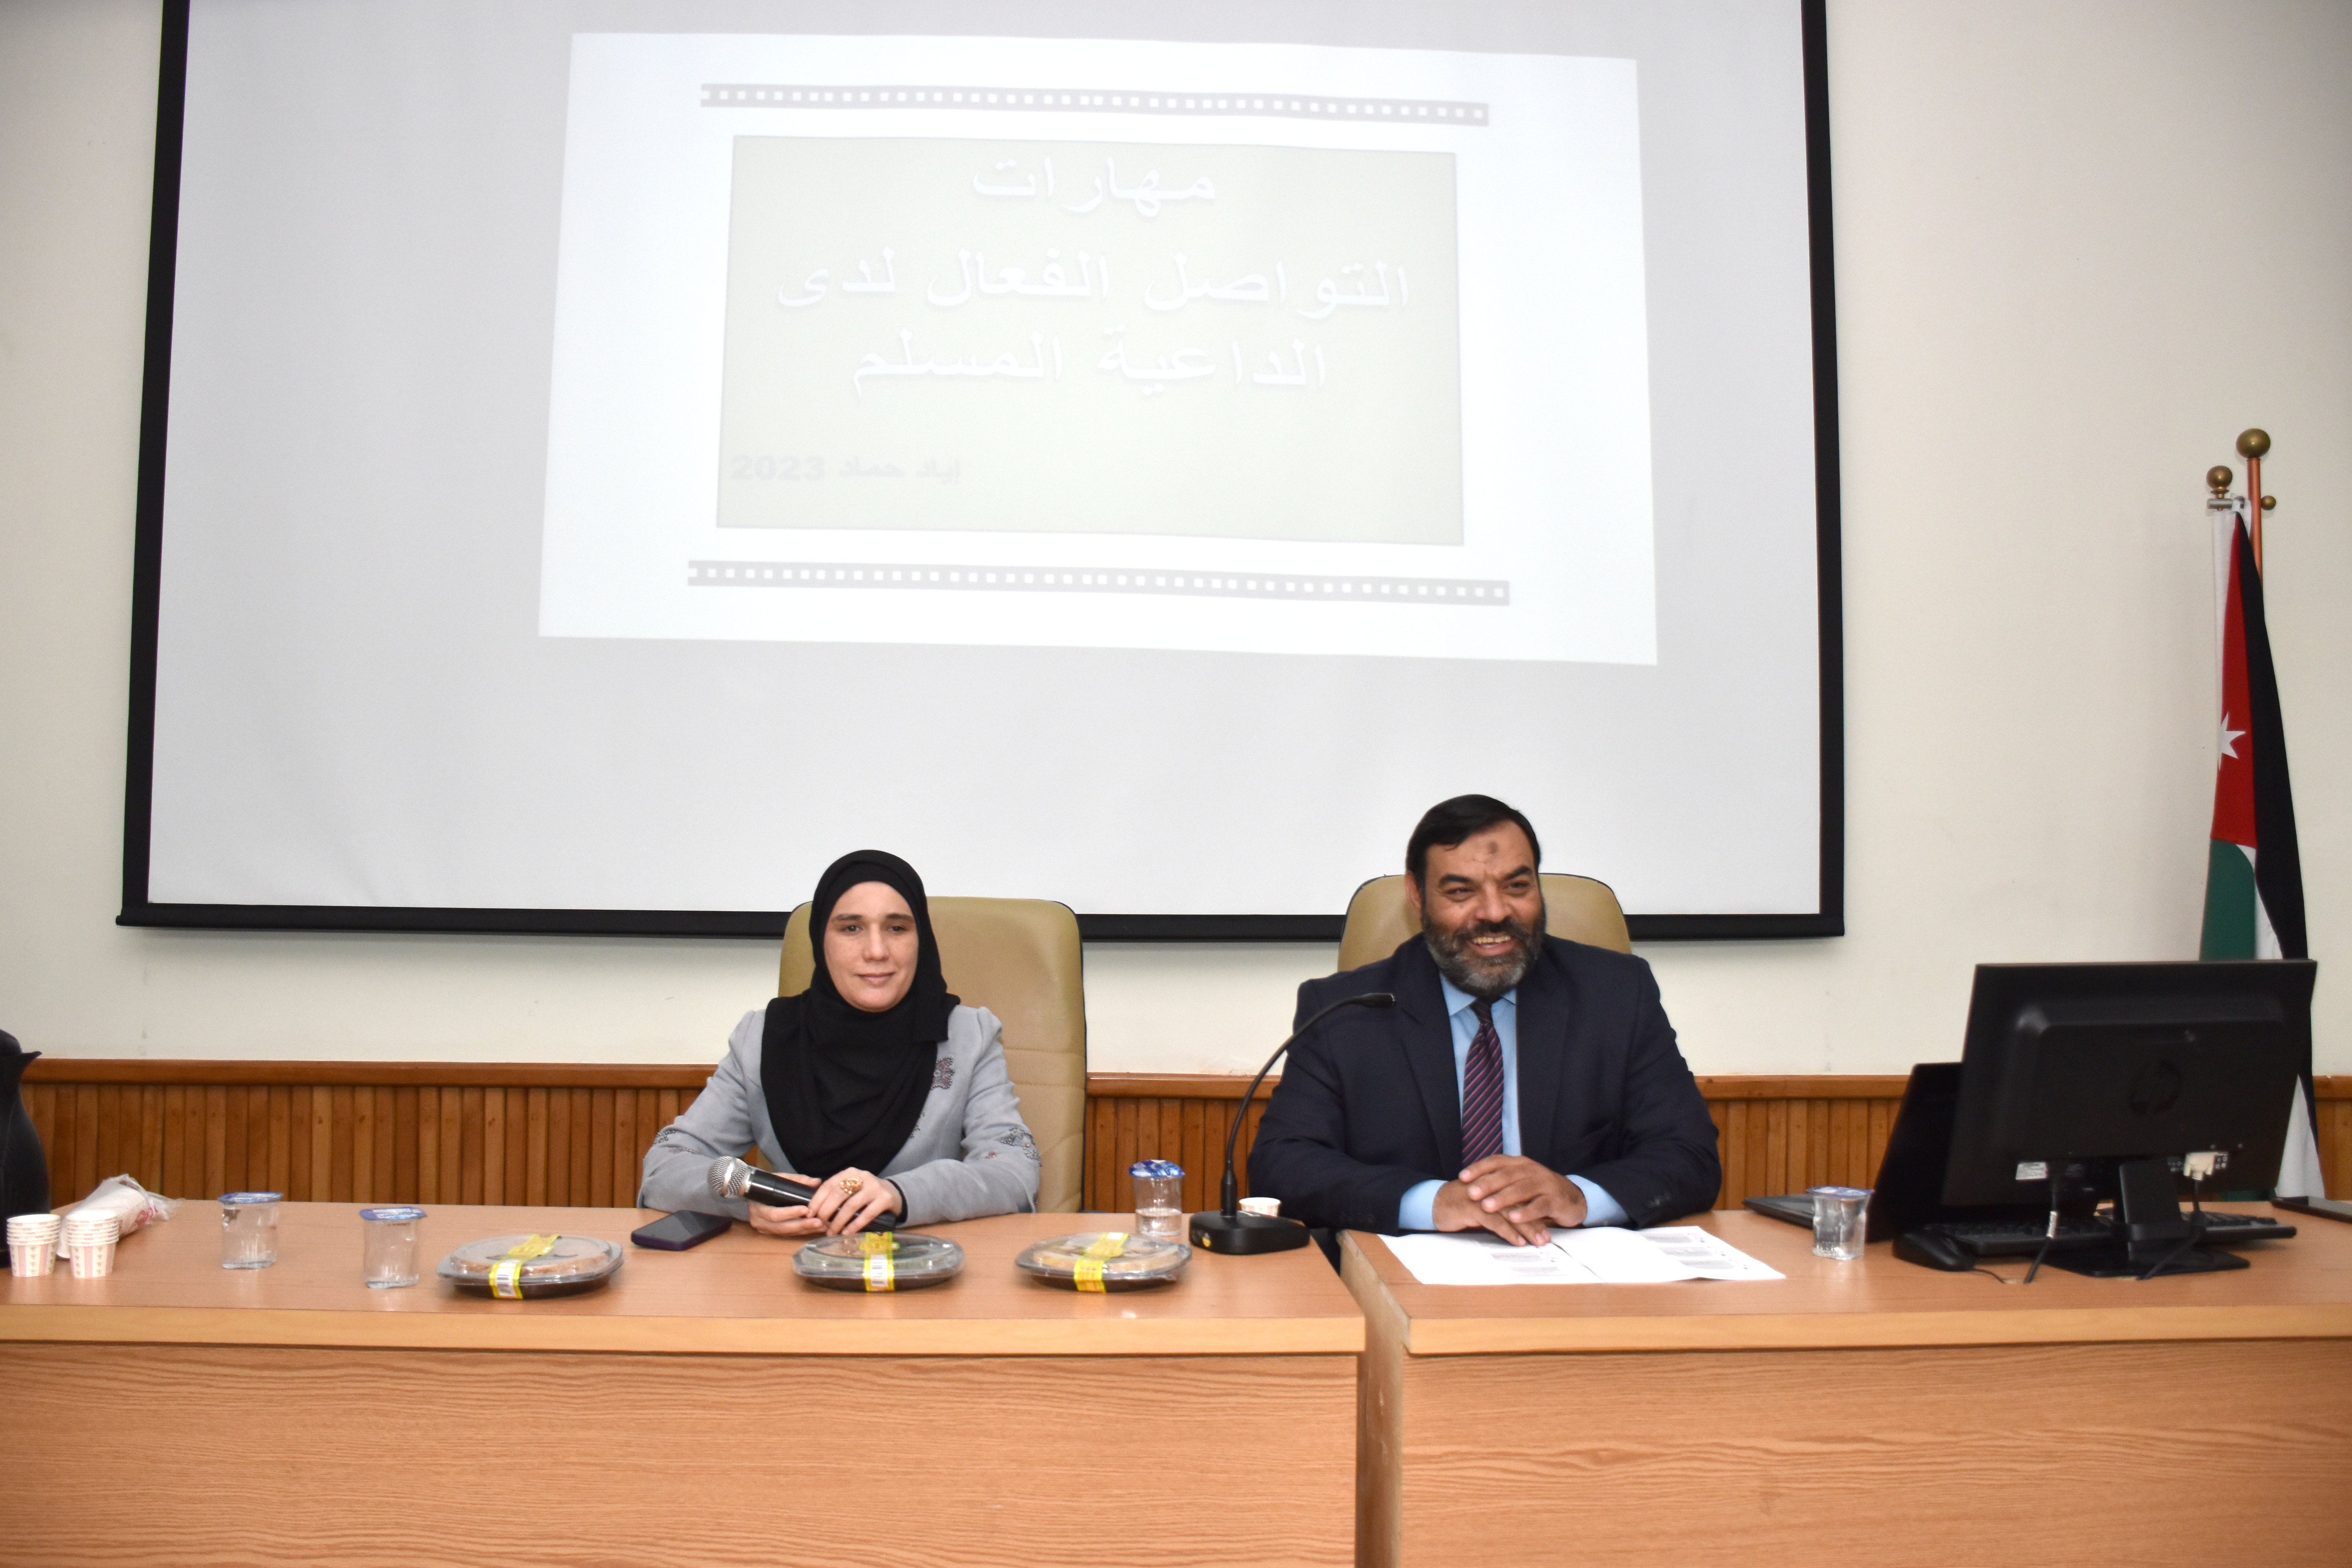 كلية الشريعة تنظم محاضرة بعنوان "مهارات التواصل الفعال لدى الداعية المسلم"